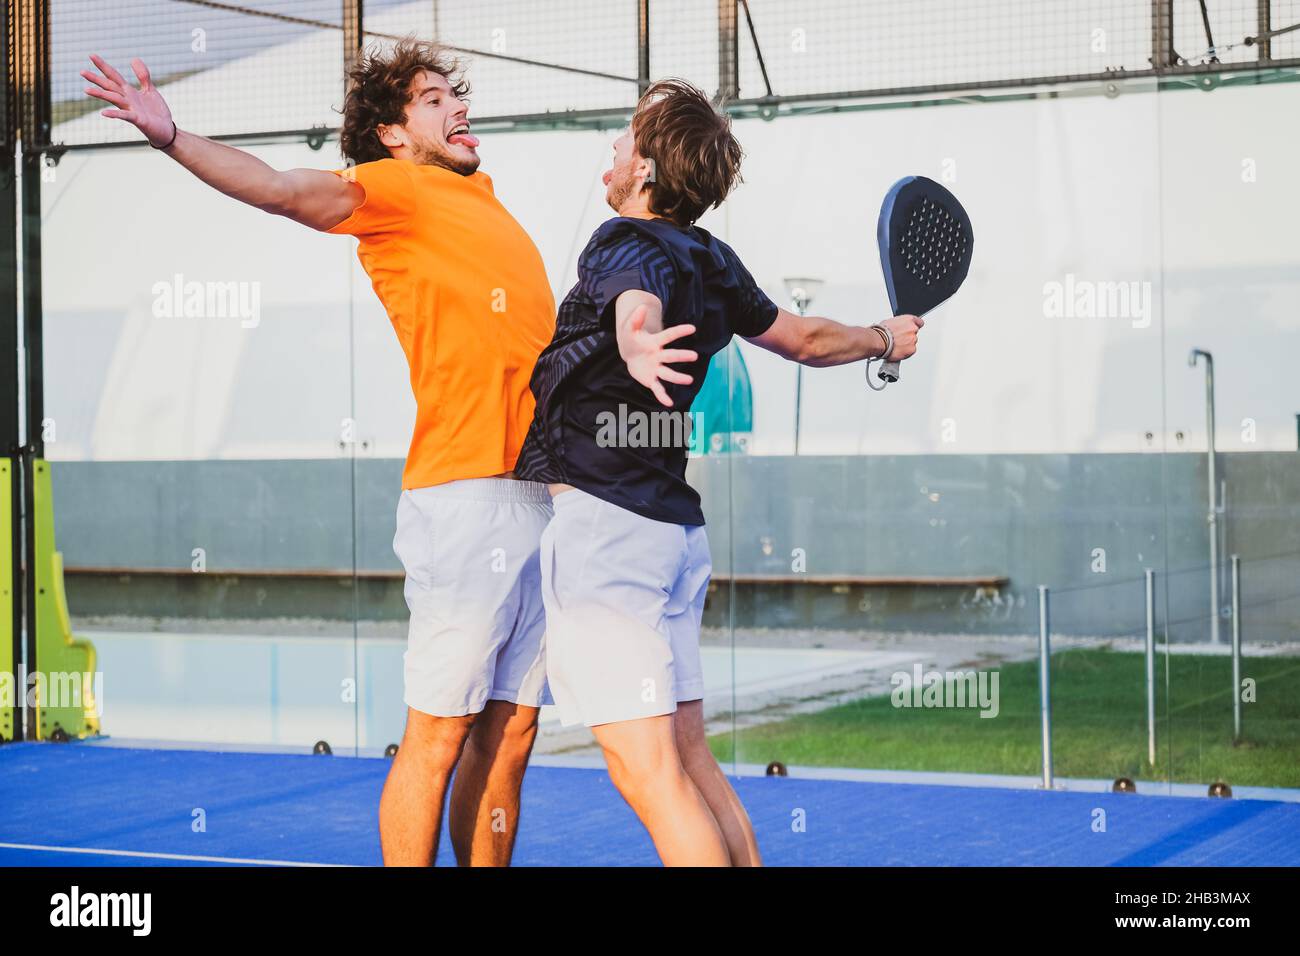 Portrait de deux sportifs souriants posant sur un terrain de padel en plein air avec des raquettes - les joueurs de padel embrassant après avoir gagné un match de padel Banque D'Images